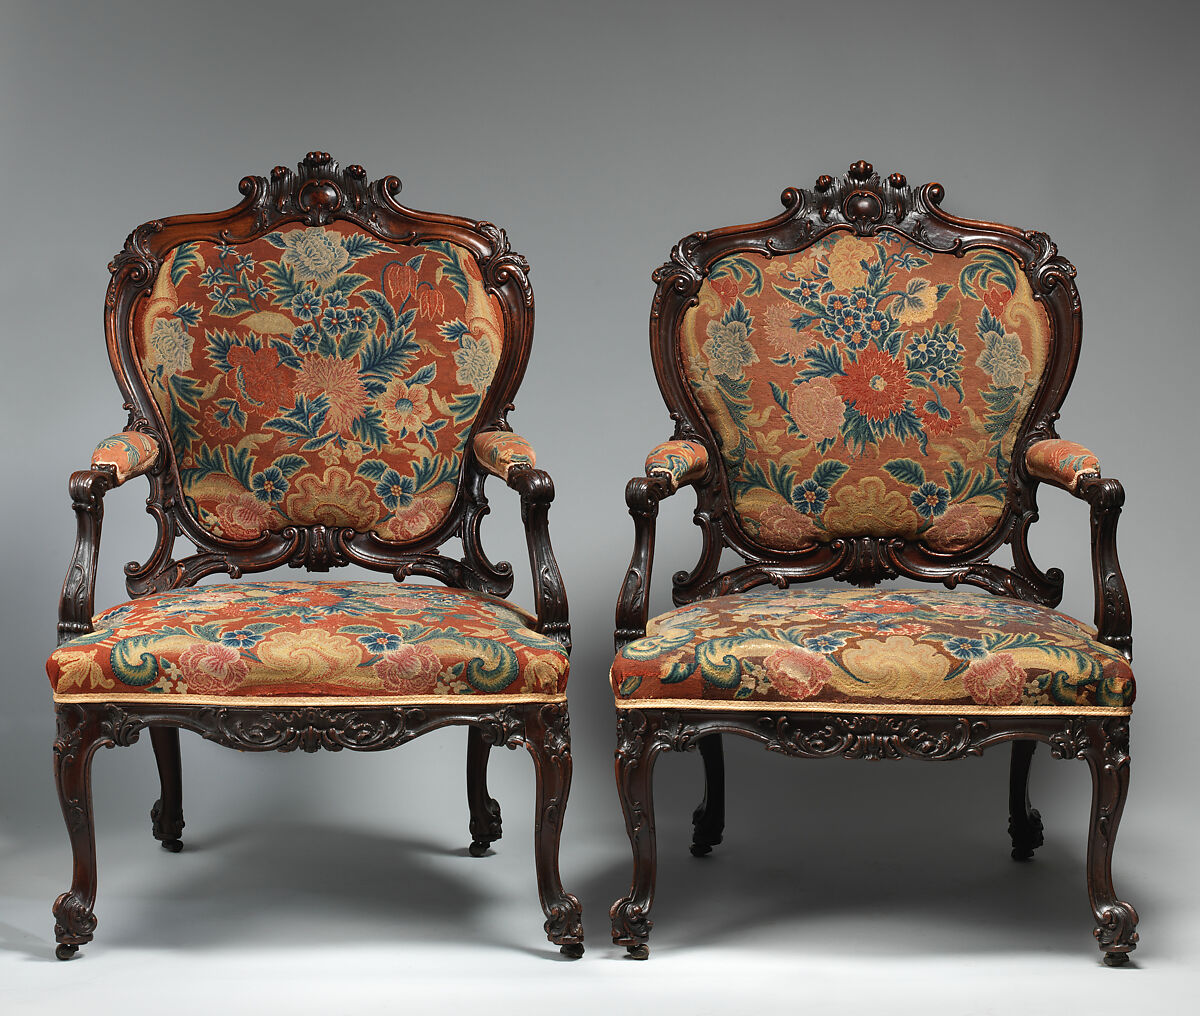 Pair of armchairs, Mahogany, beech and needlework, British 